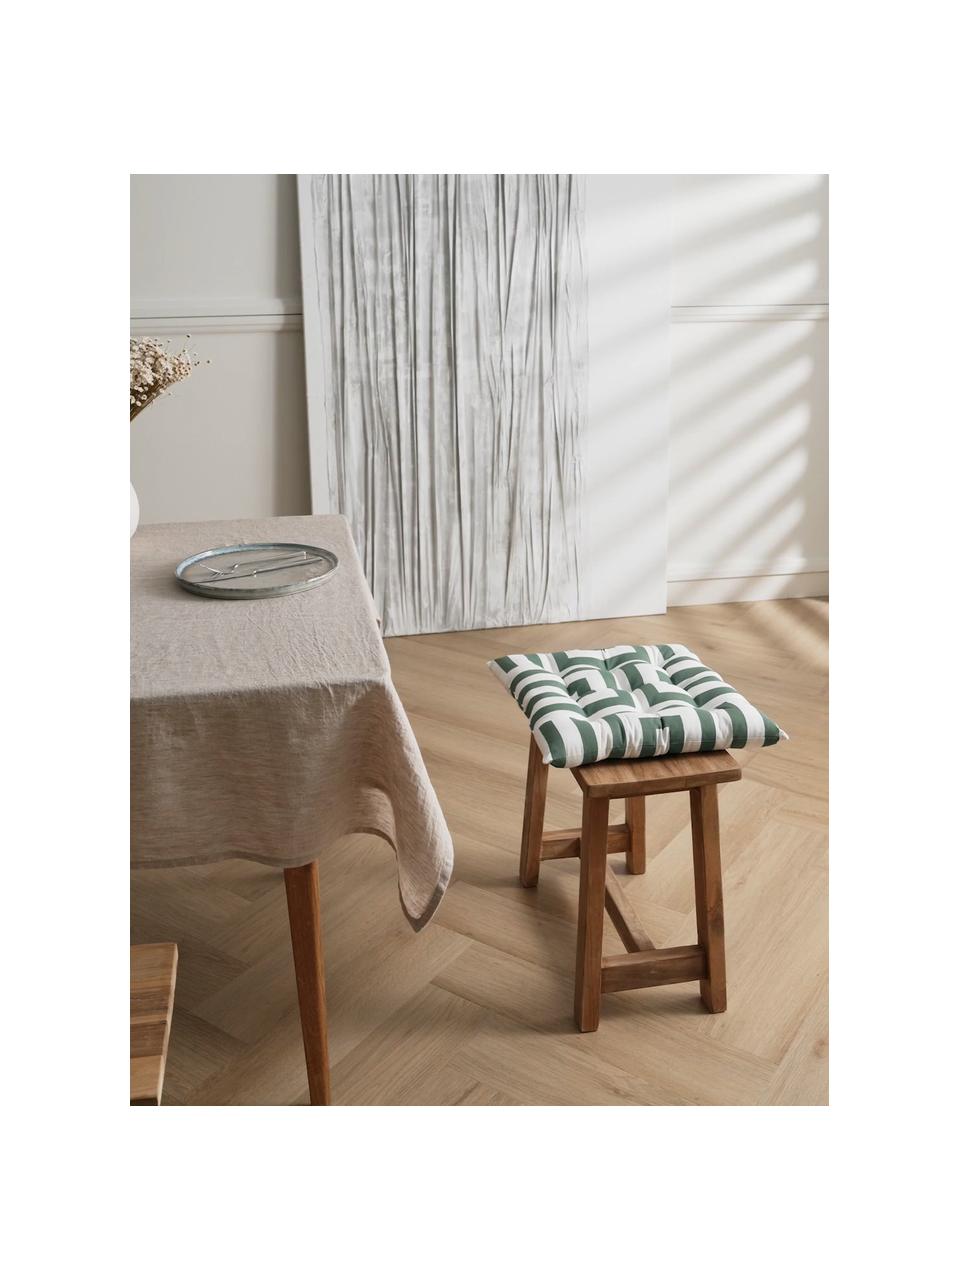 Poduszka na krzesło z bawełny Bram, Ciemny zielony, biały, S 40 x D 40 cm